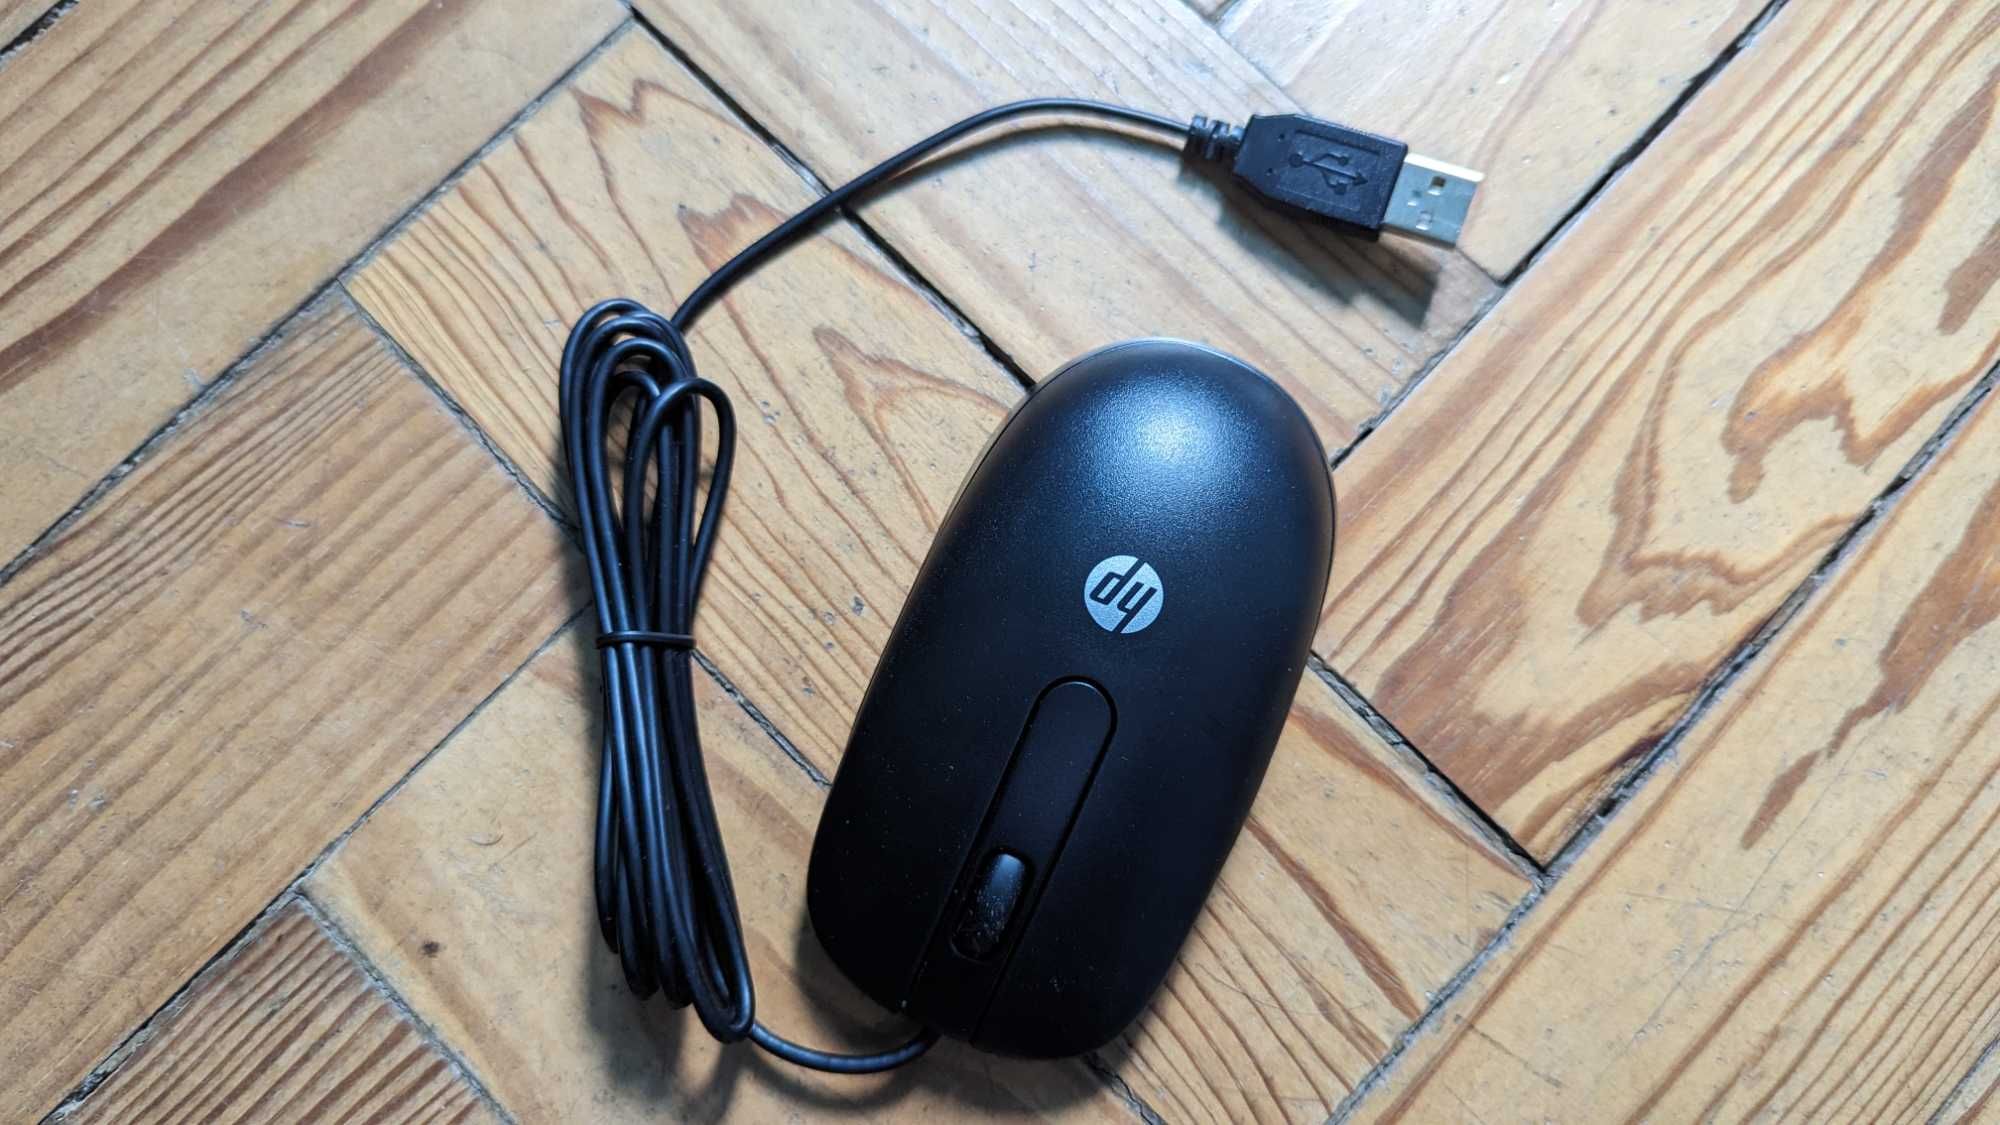 [Novo] Rato Óptico HP para Computadores/Portáteis